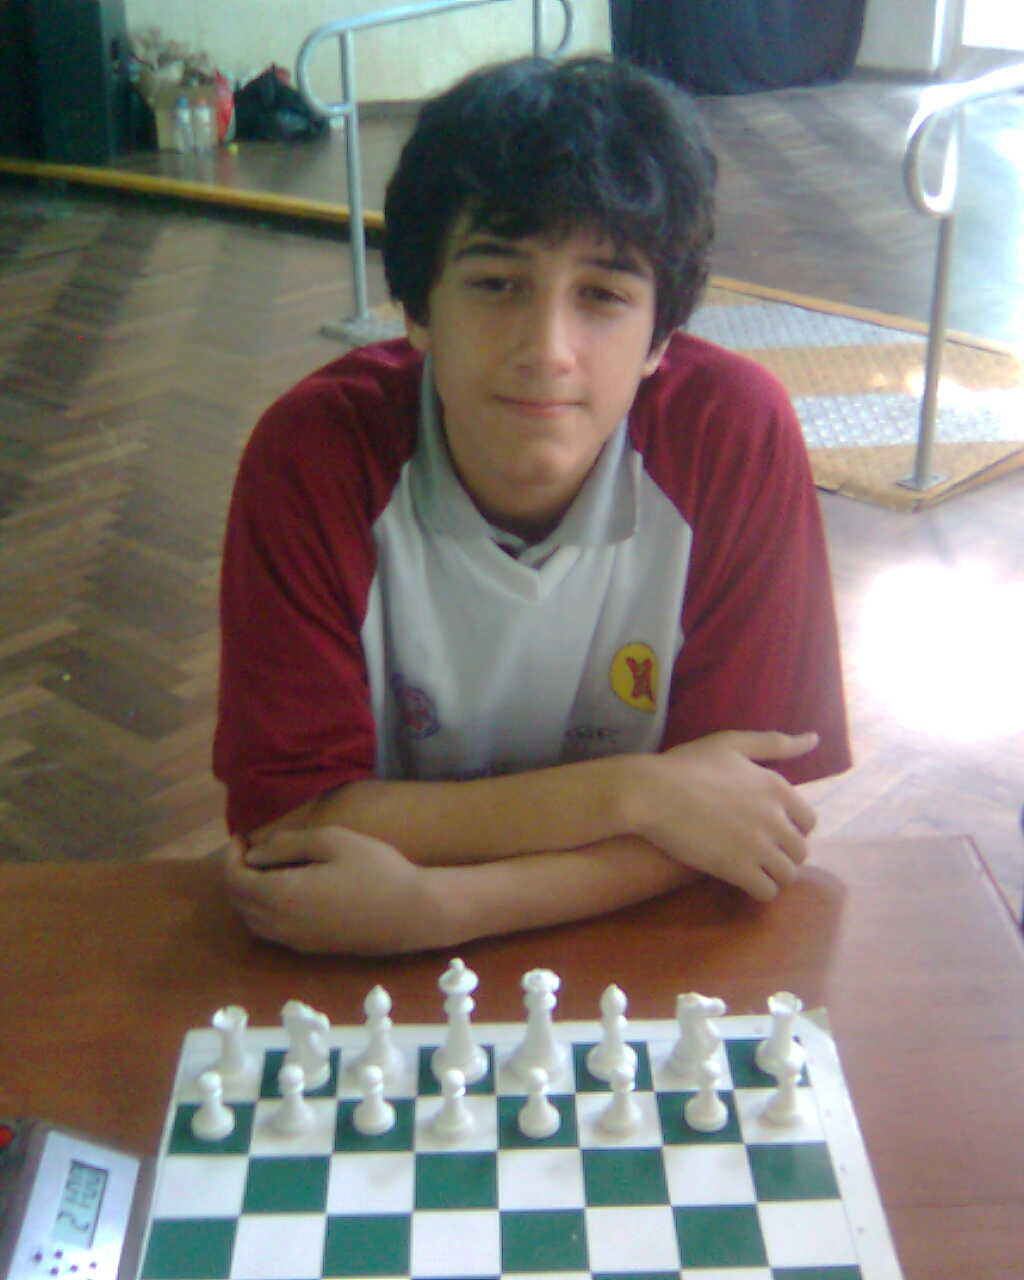 O tabuleiro de xadrez do futuro permite que você mexa as peças sem